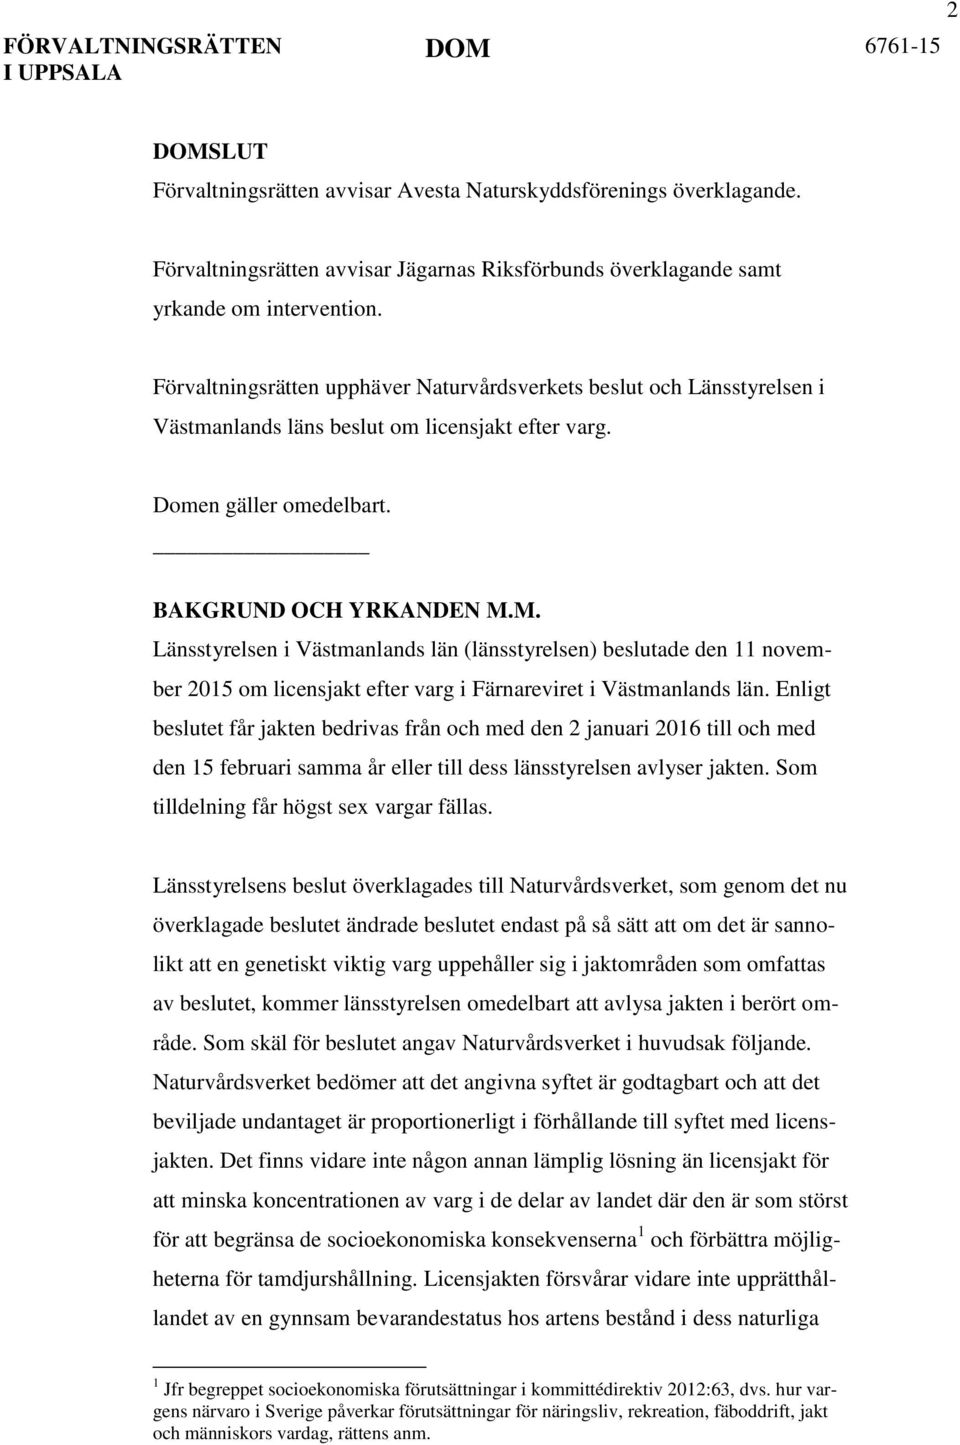 M. Länsstyrelsen i Västmanlands län (länsstyrelsen) beslutade den 11 november 2015 om licensjakt efter varg i Färnareviret i Västmanlands län.